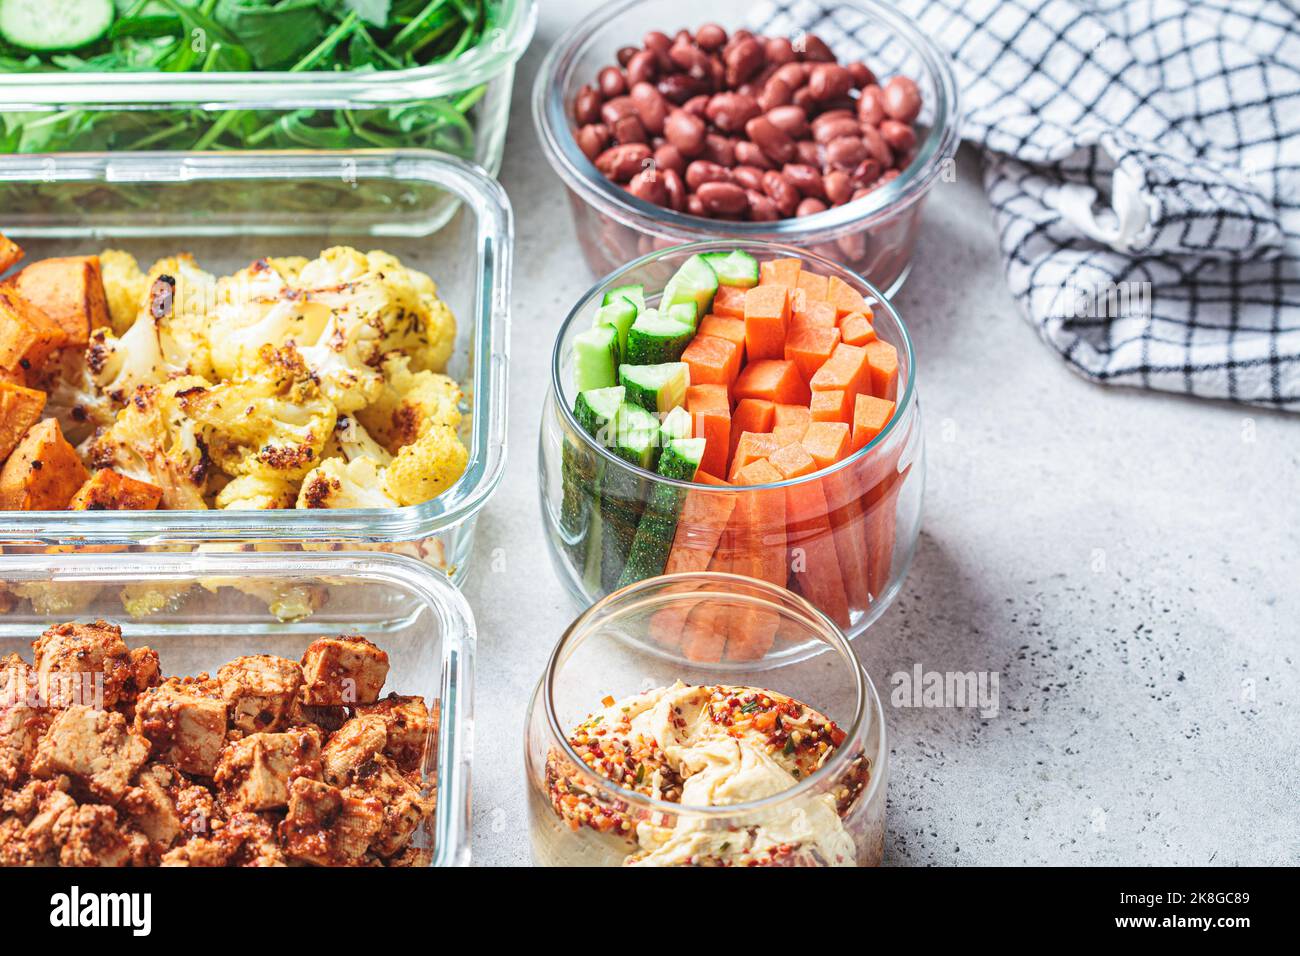 Récipients de préparation de repas végétaliens avec ingrédients cuits : tofu mariné, haricots, légumes cuits, salade verte et bâtonnets de légumes. Banque D'Images